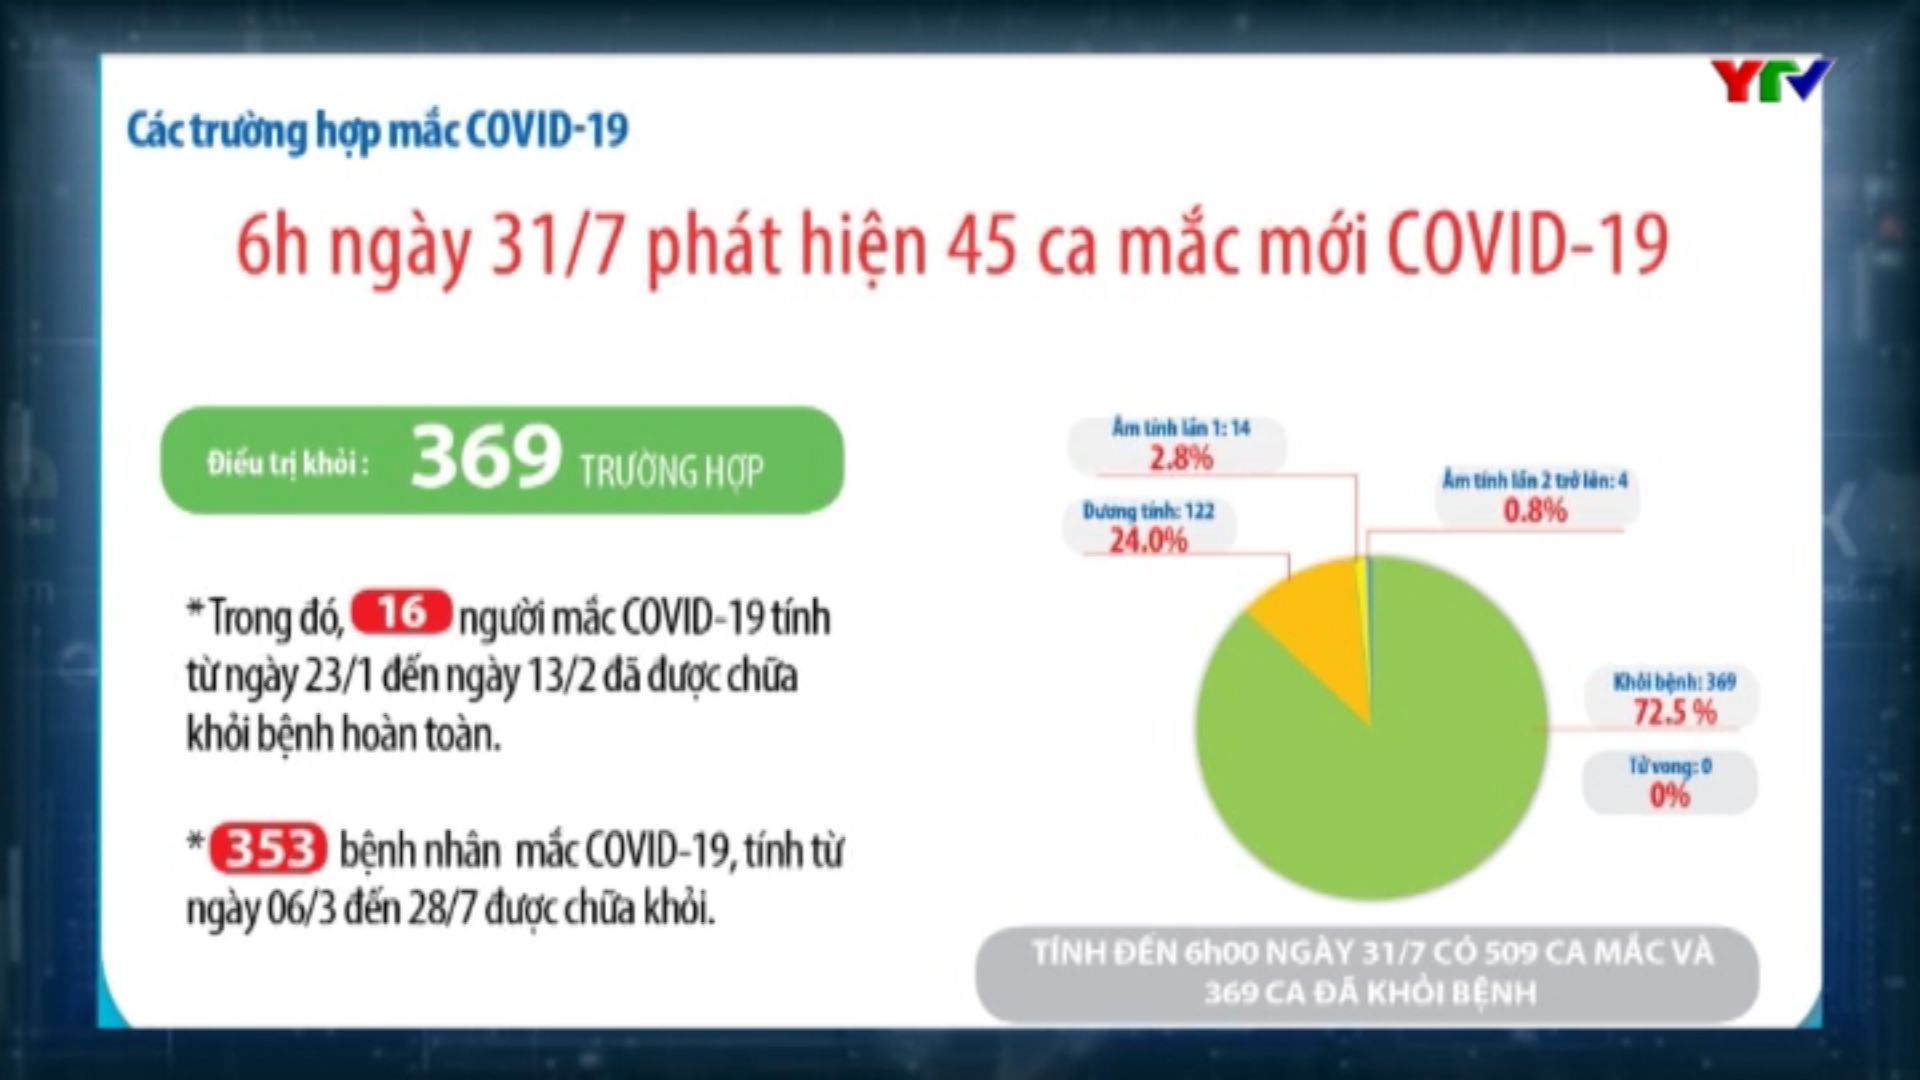 Việt Nam ghi nhận thêm 45 ca mắc mới COVID - 19